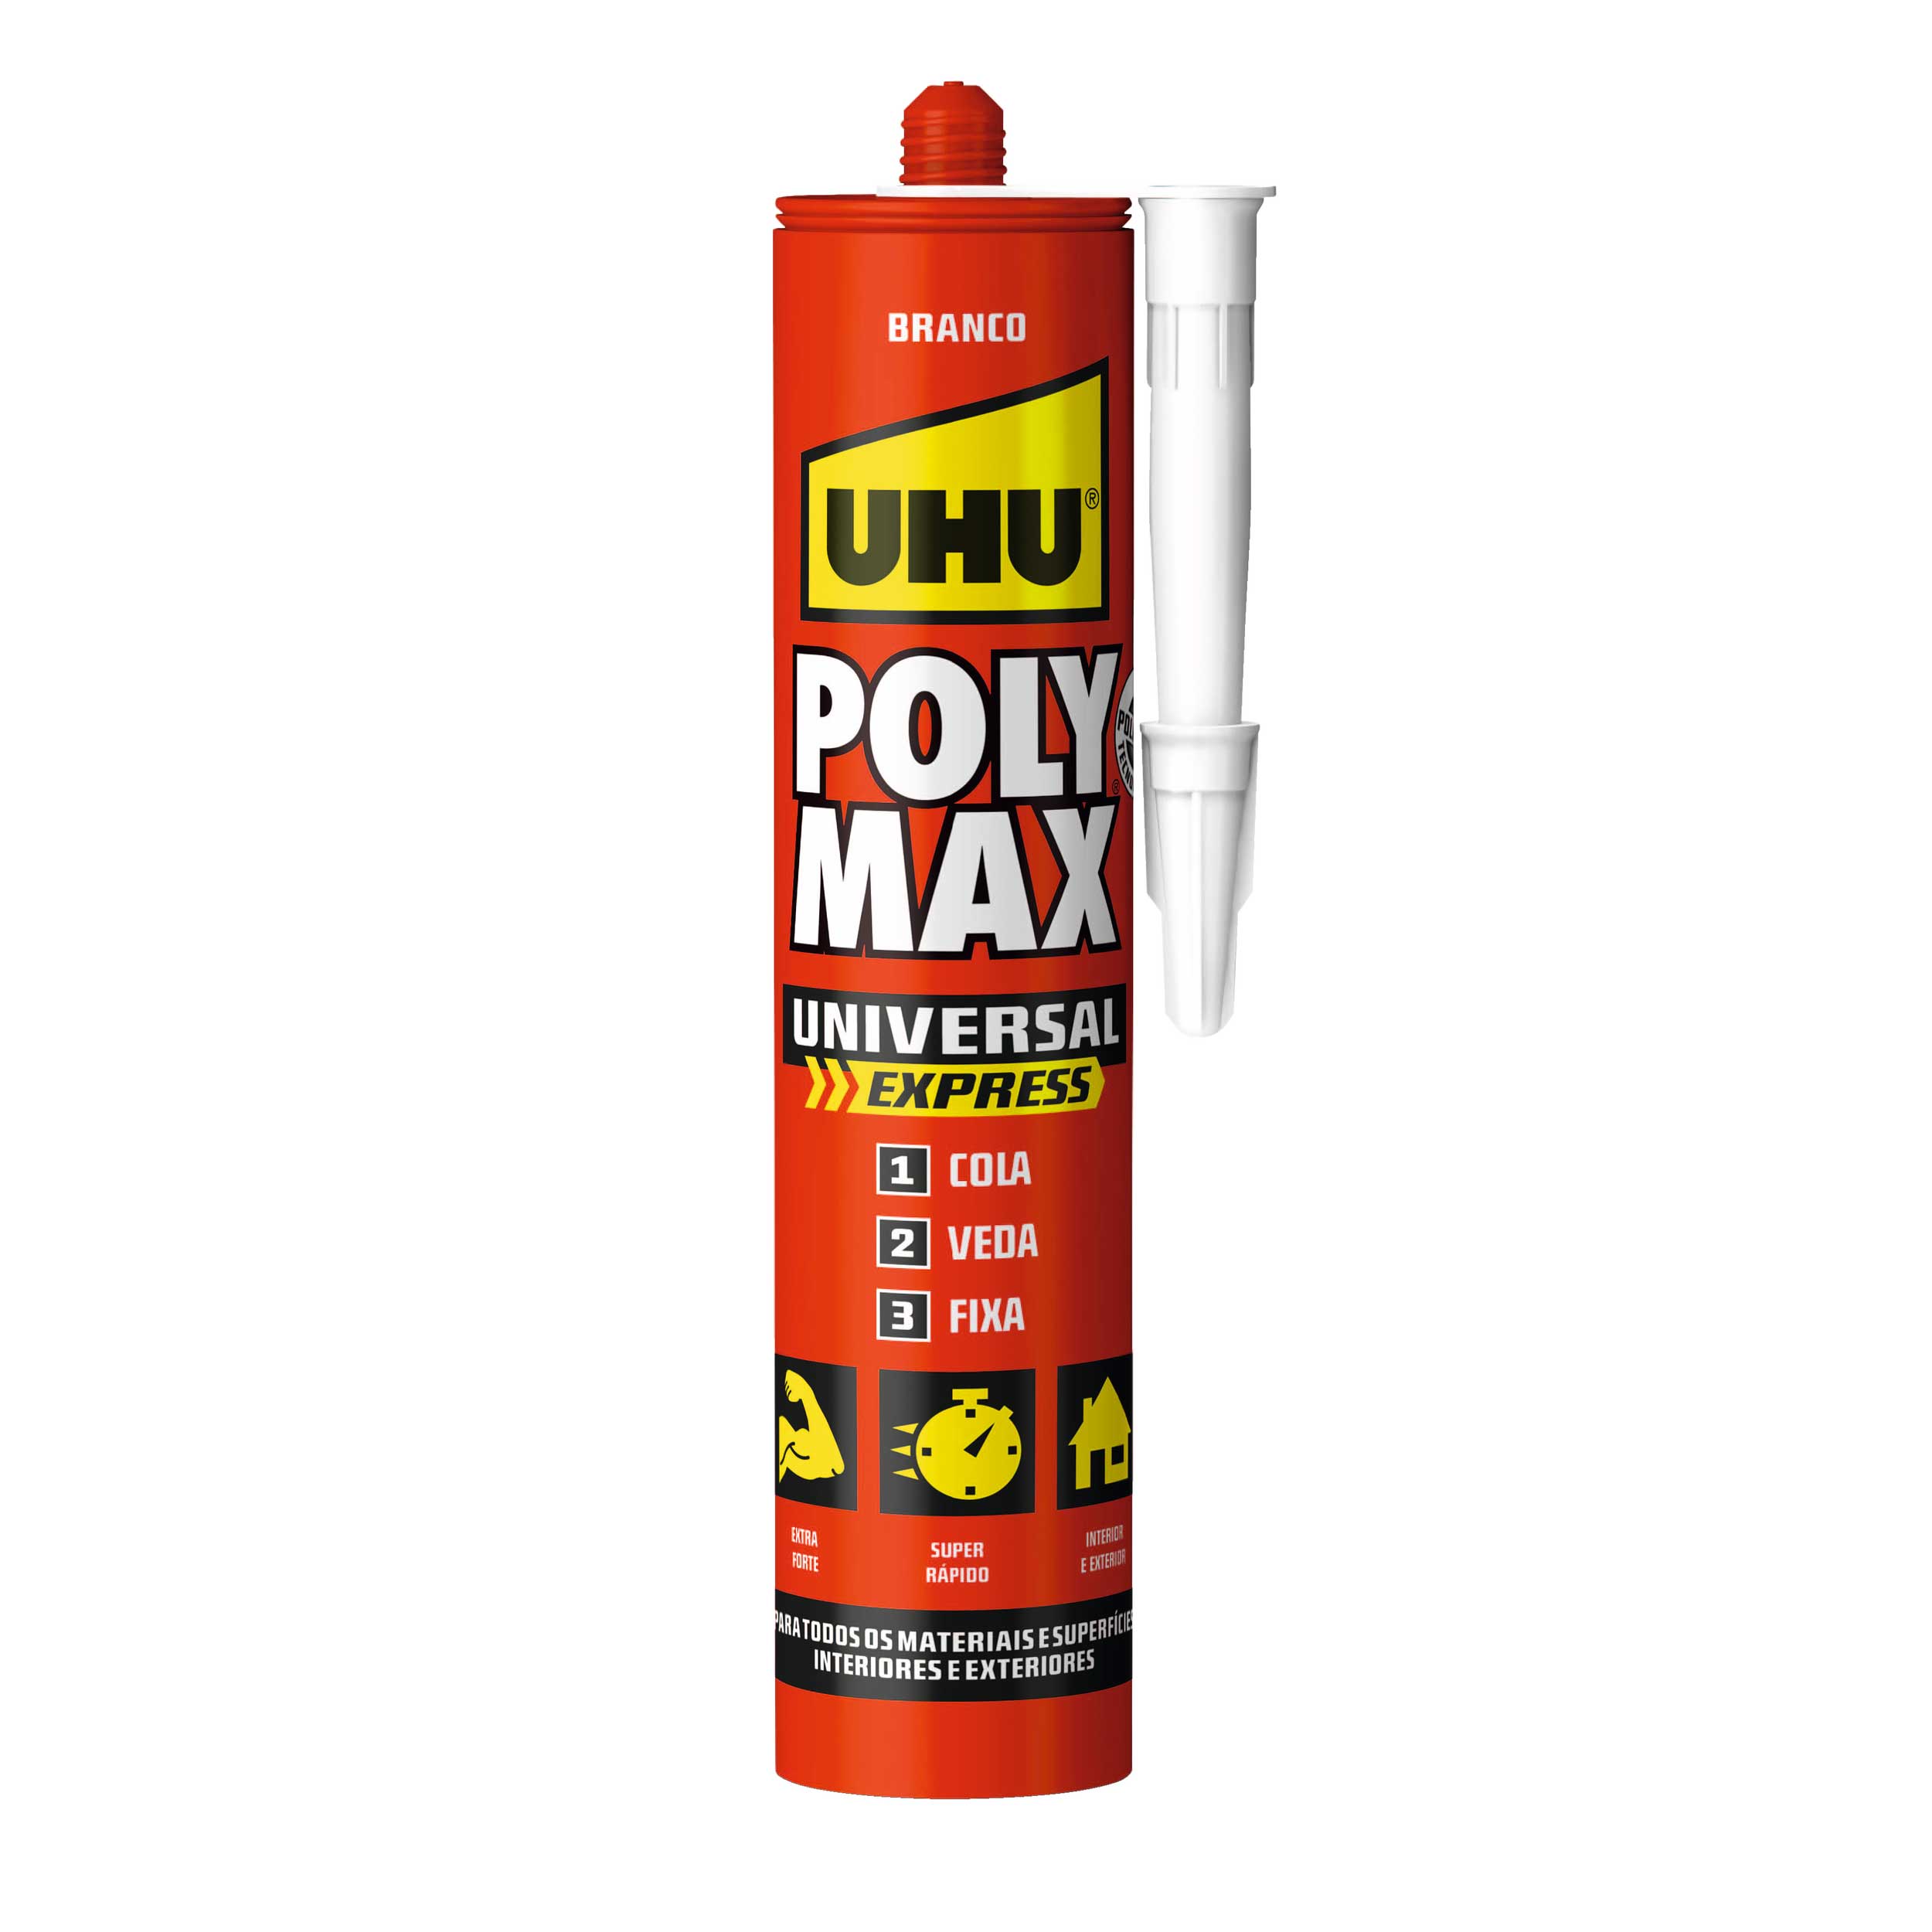 POLY MAX EXPRESS ORIGINAL 425G P UHU